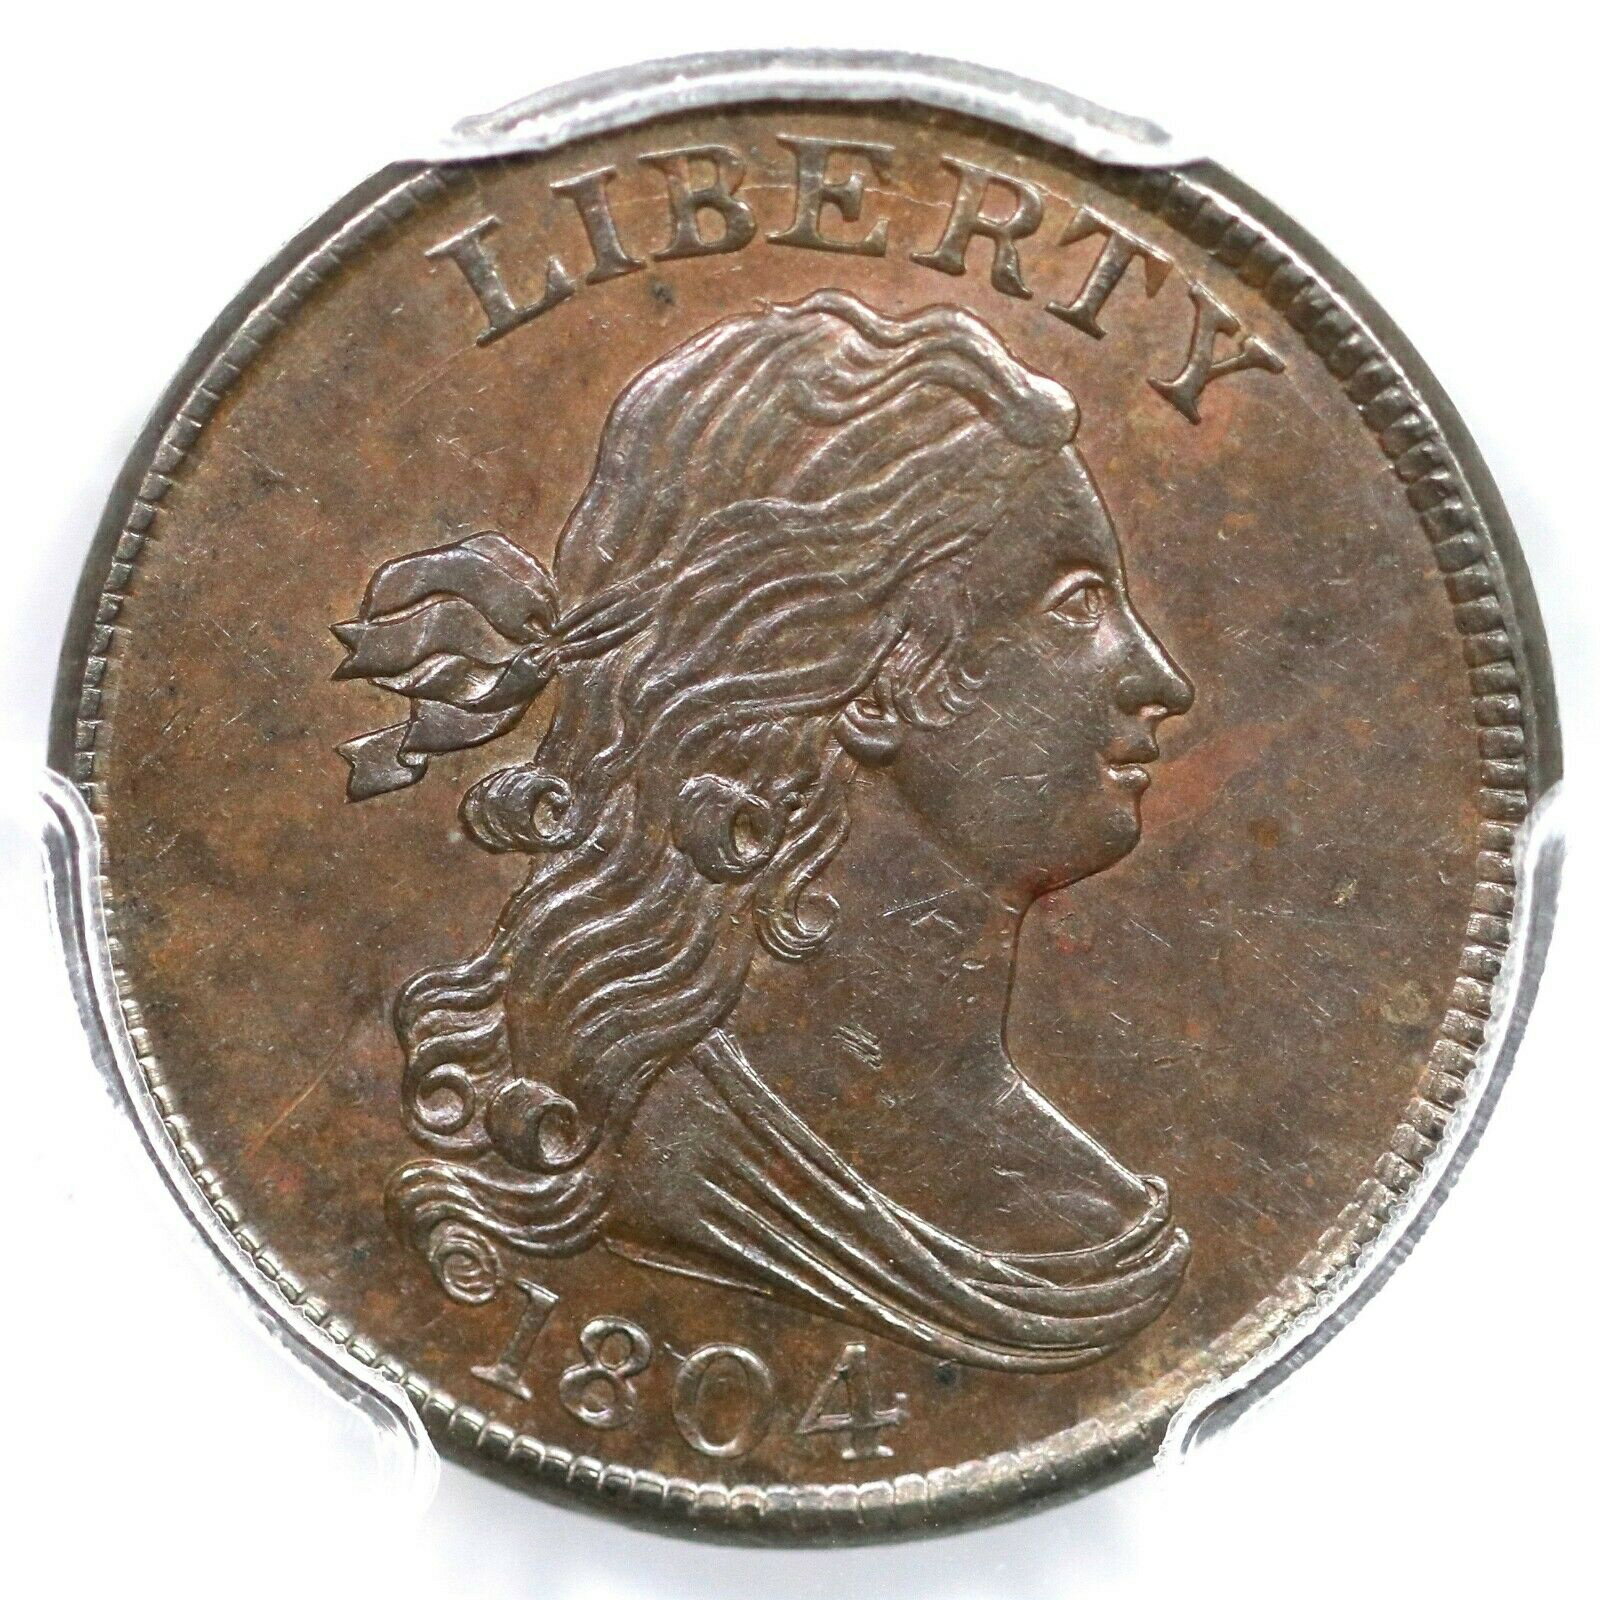 【極美品/品質保証書付】 アンティークコイン 硬貨 1804 C-9 R-2 PCGS MS 63 BN Crosslet 4, Stems Draped Bust Half Cent Coin 1/2c [送料無料] #oct-wr-8790-2808